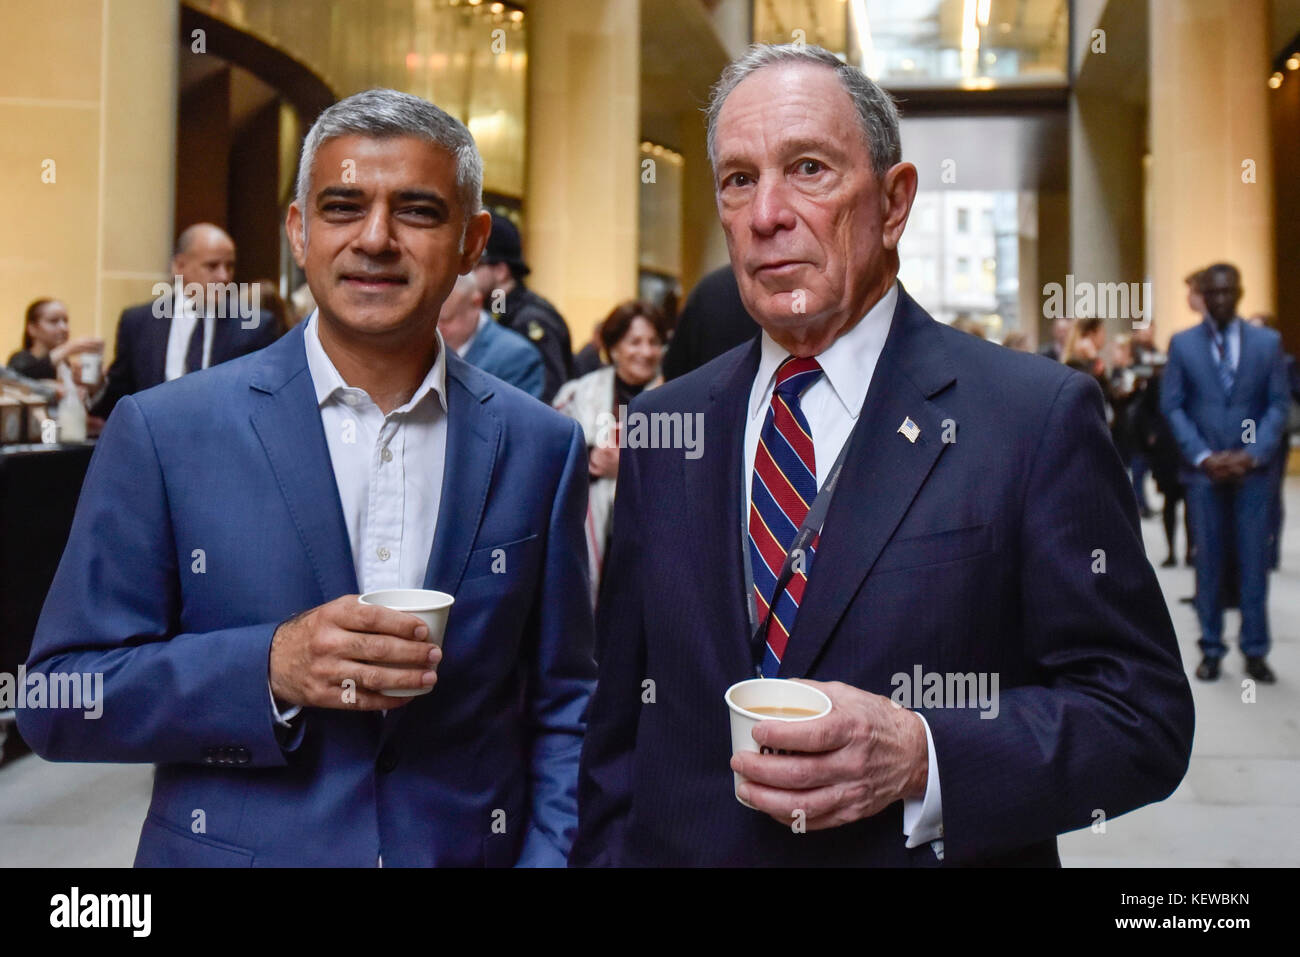 Londres, Royaume-Uni. 24 Oct, 2017. Michael Bloomberg et Sadiq Khan, Maire de Londres, à un photocall pour marquer le lancement de Bloomberg's nouveau siège européen dans la ville de Londres, conçu par des partenaires. Crédit : Stephen Chung/Alamy Live News Banque D'Images